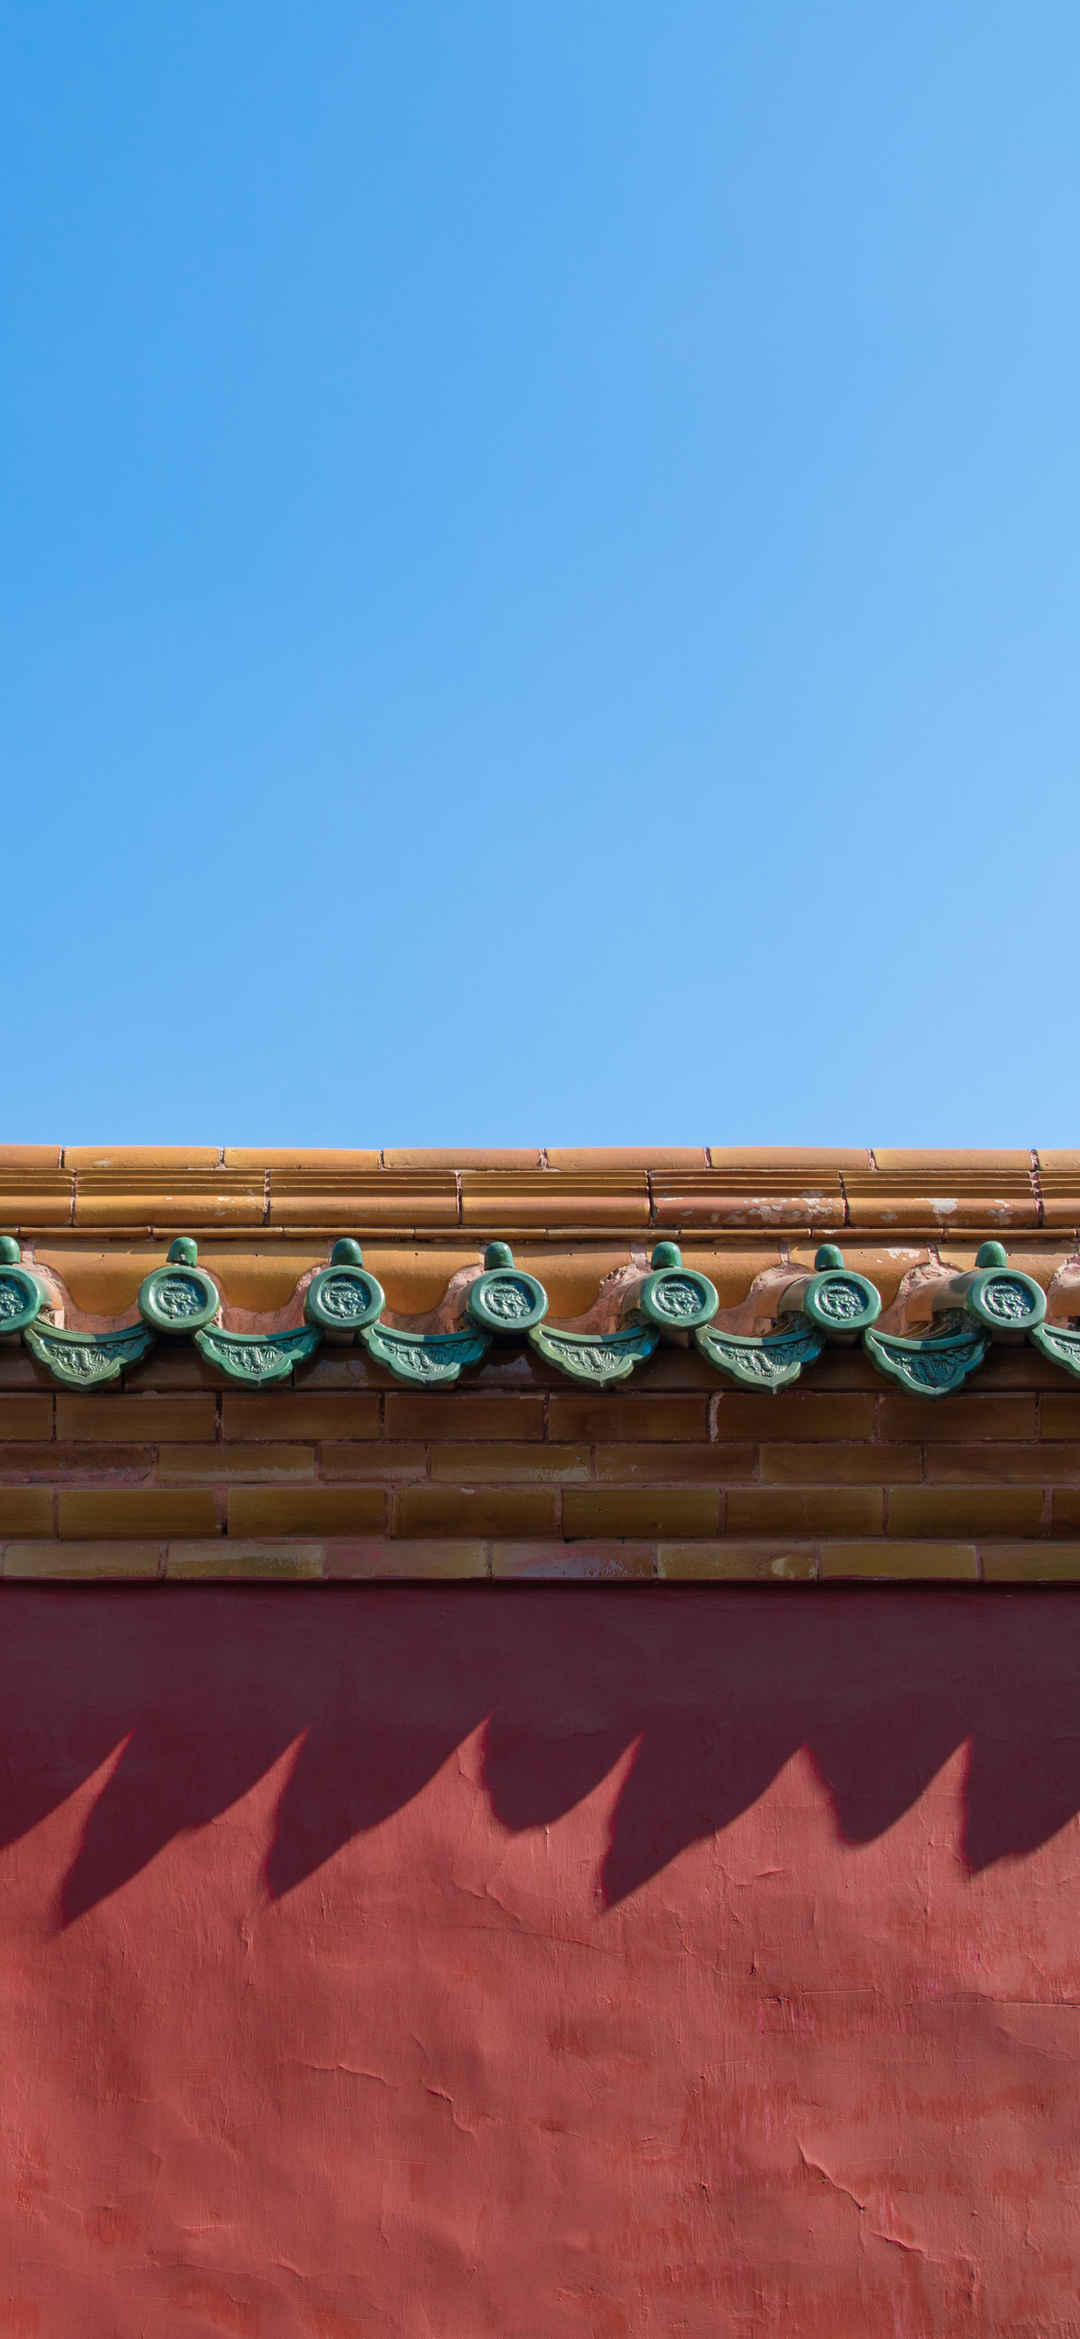 北京故宫朱墙绿瓦风景壁纸